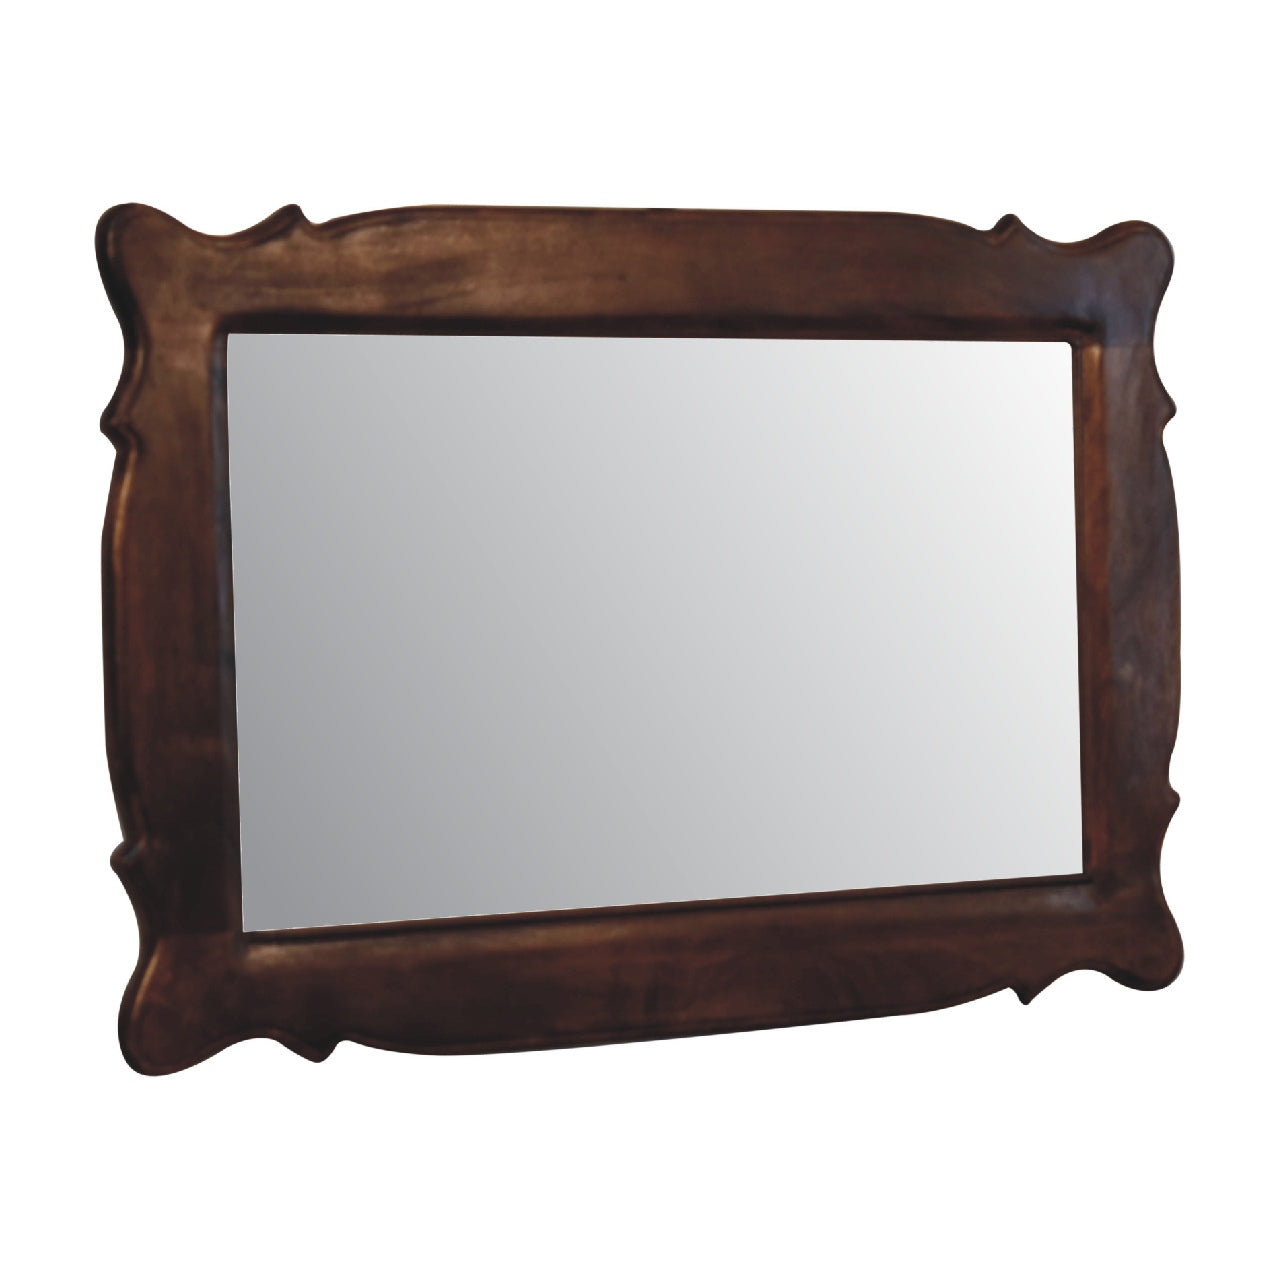 Chestnut Oblong Mirror Frame